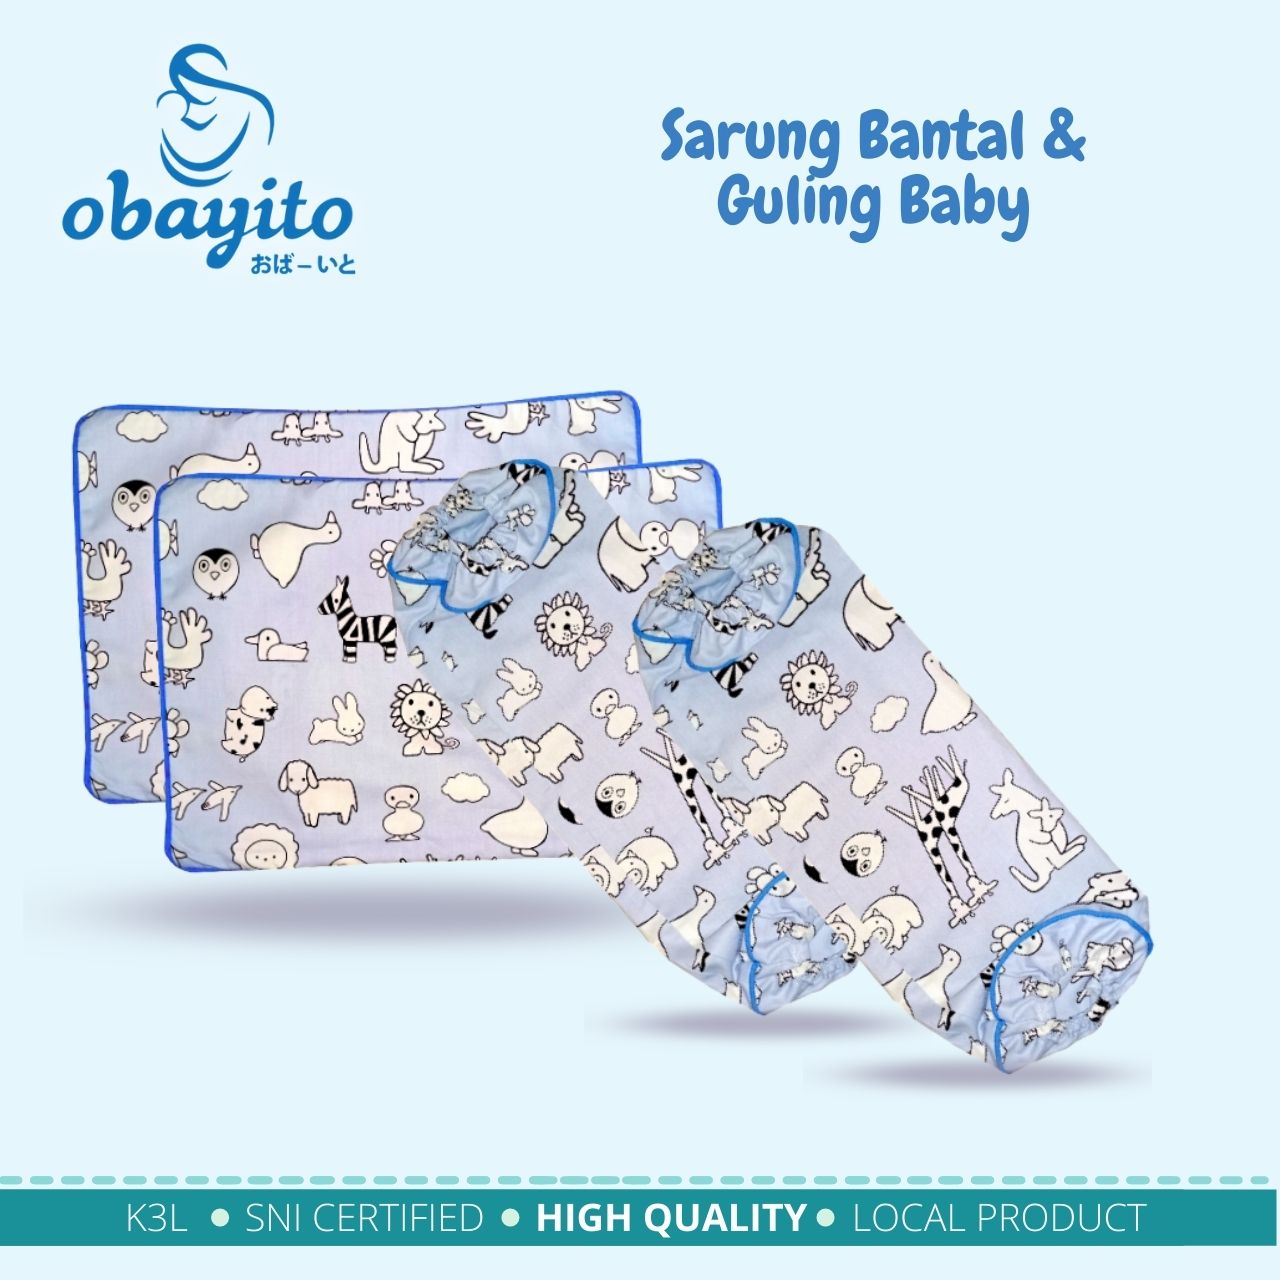 Sarung bantal & Guling baby dari obayito